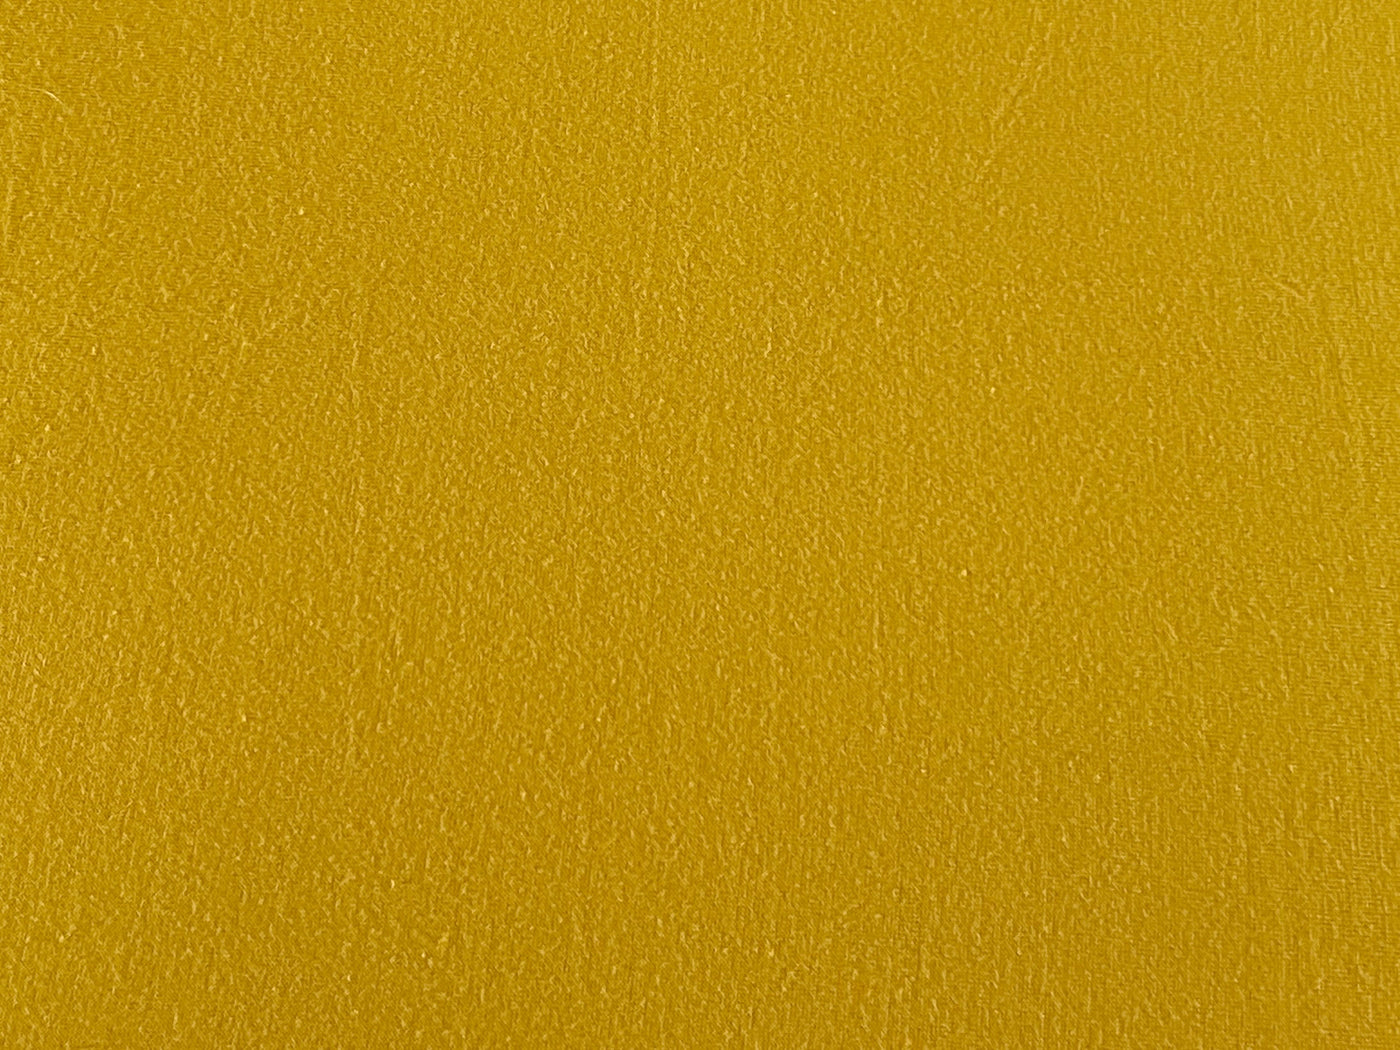 Mustard Yellow Gold Newborn Photography Posing Fabric Backdrop - Beautiful Photo Props